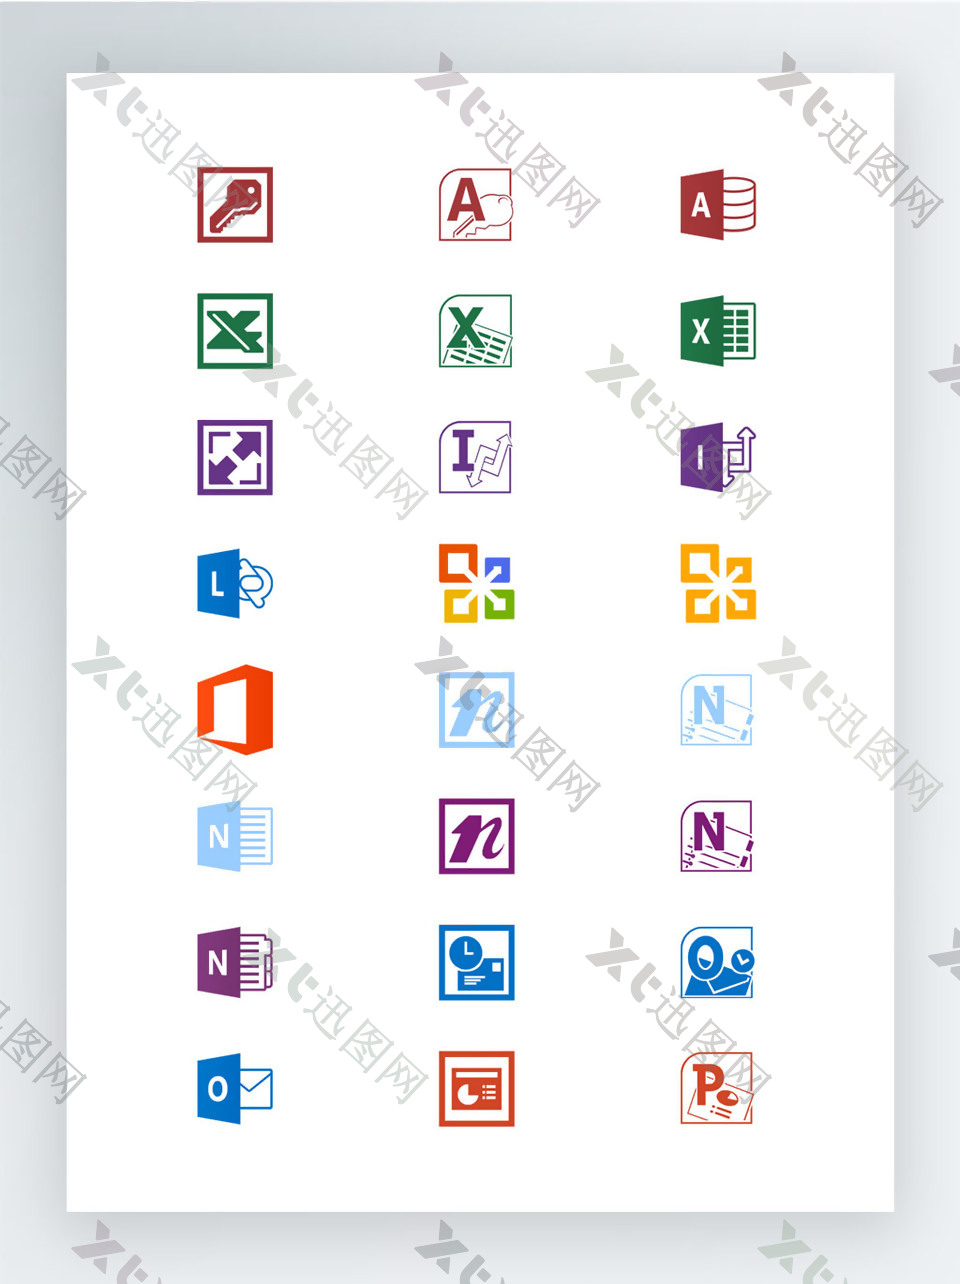 Office2013产品相关图标